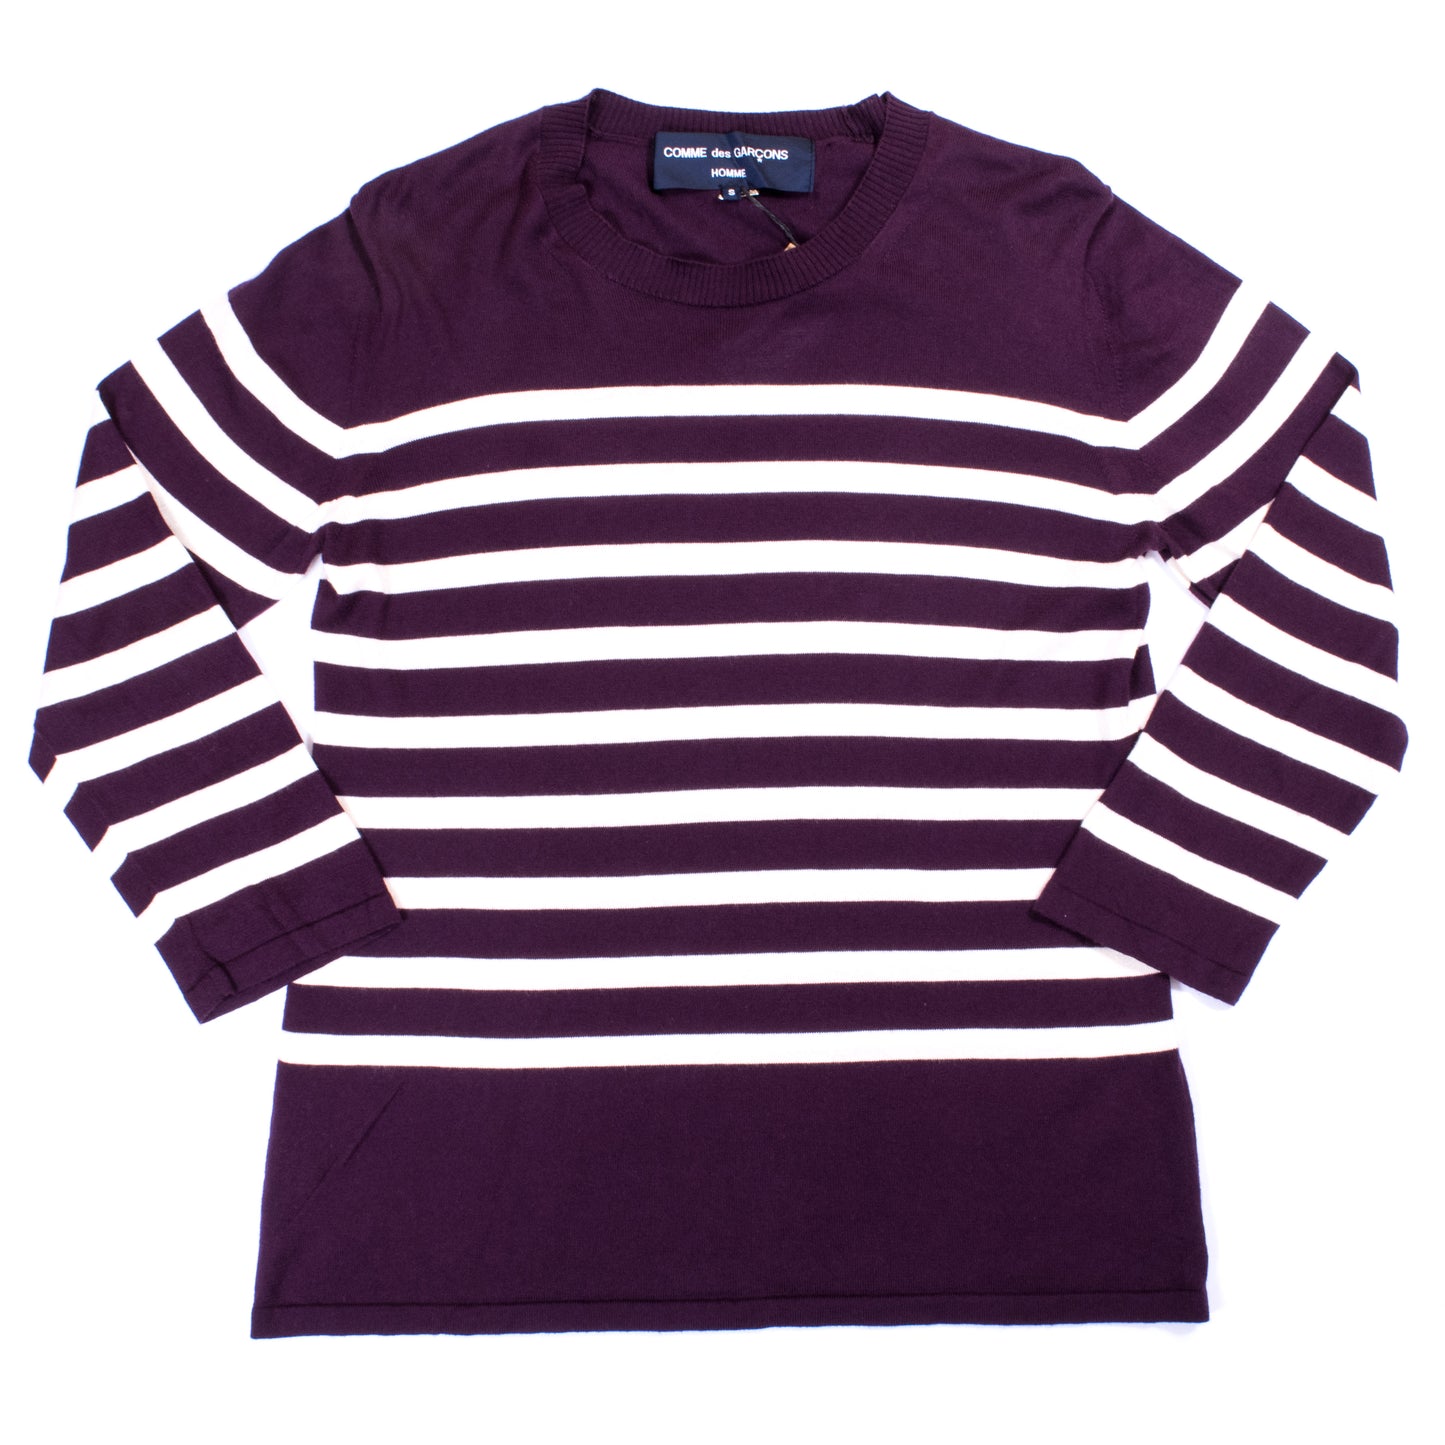 Comme des Garçons Homme Striped Sweater (2010)